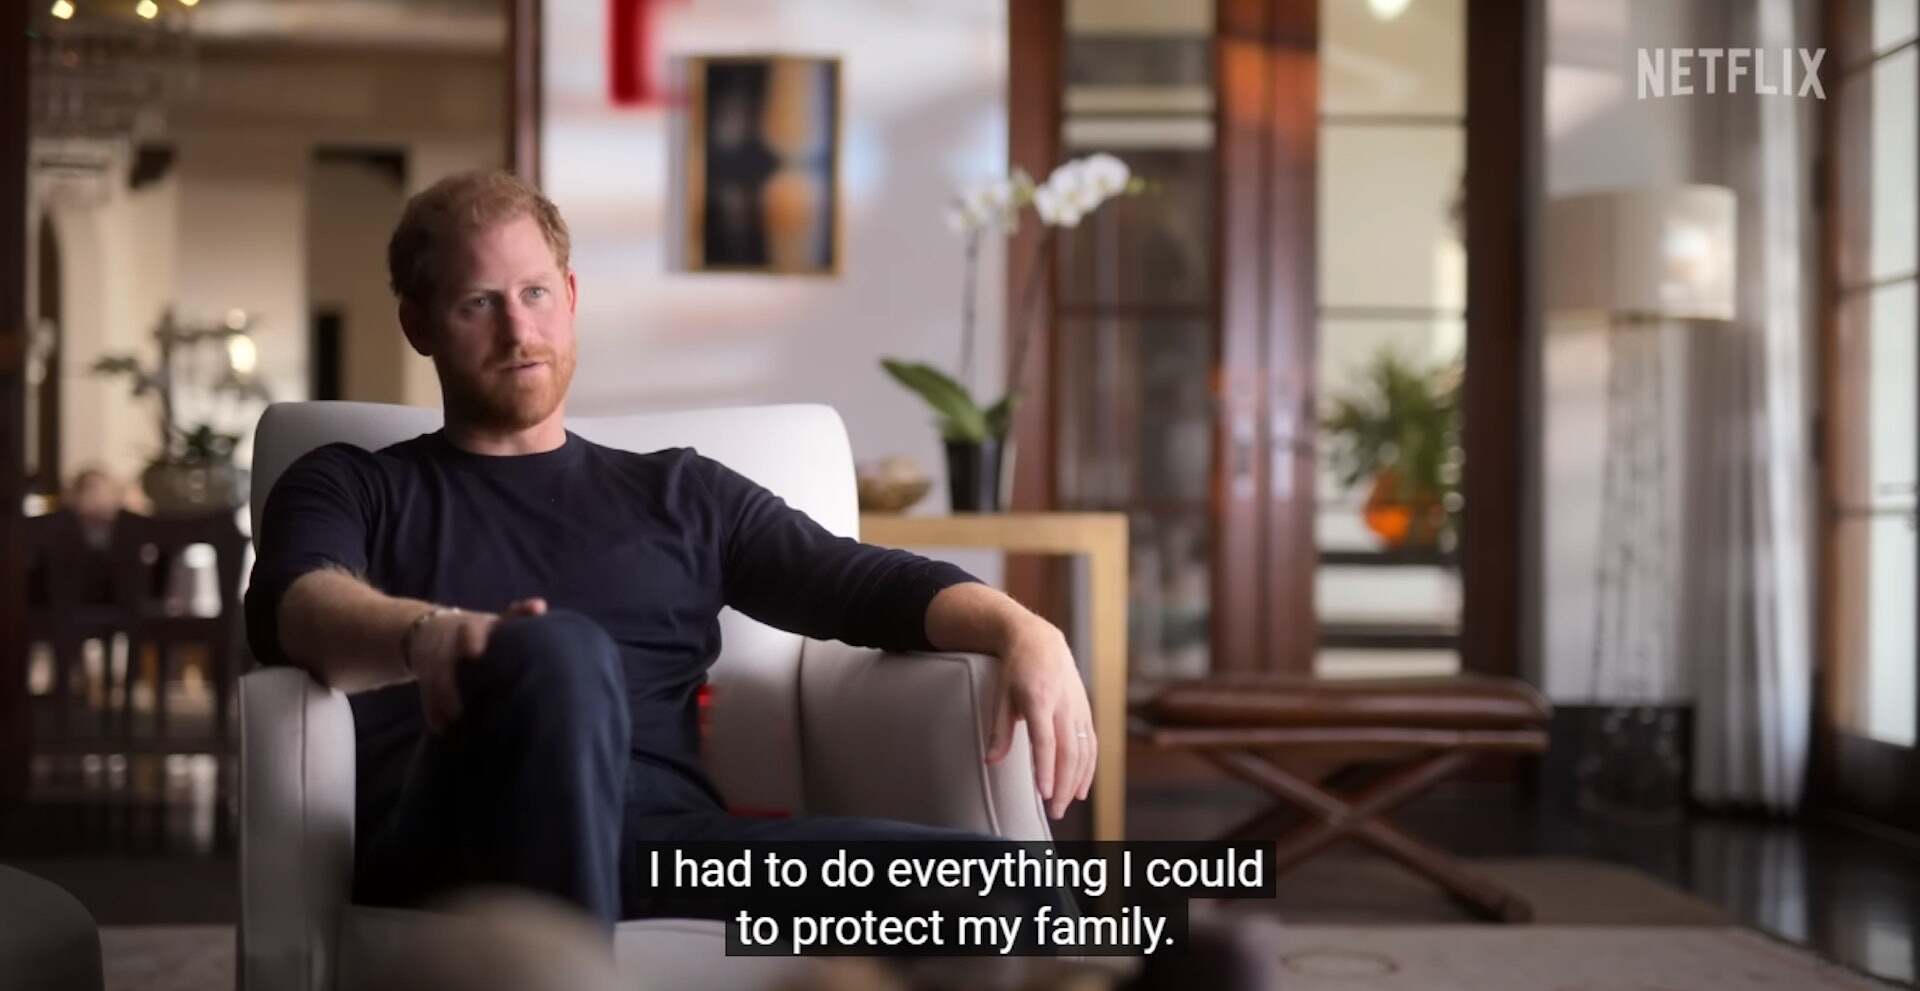 片中哈里王子提到自己「必須盡全力來保護家人」